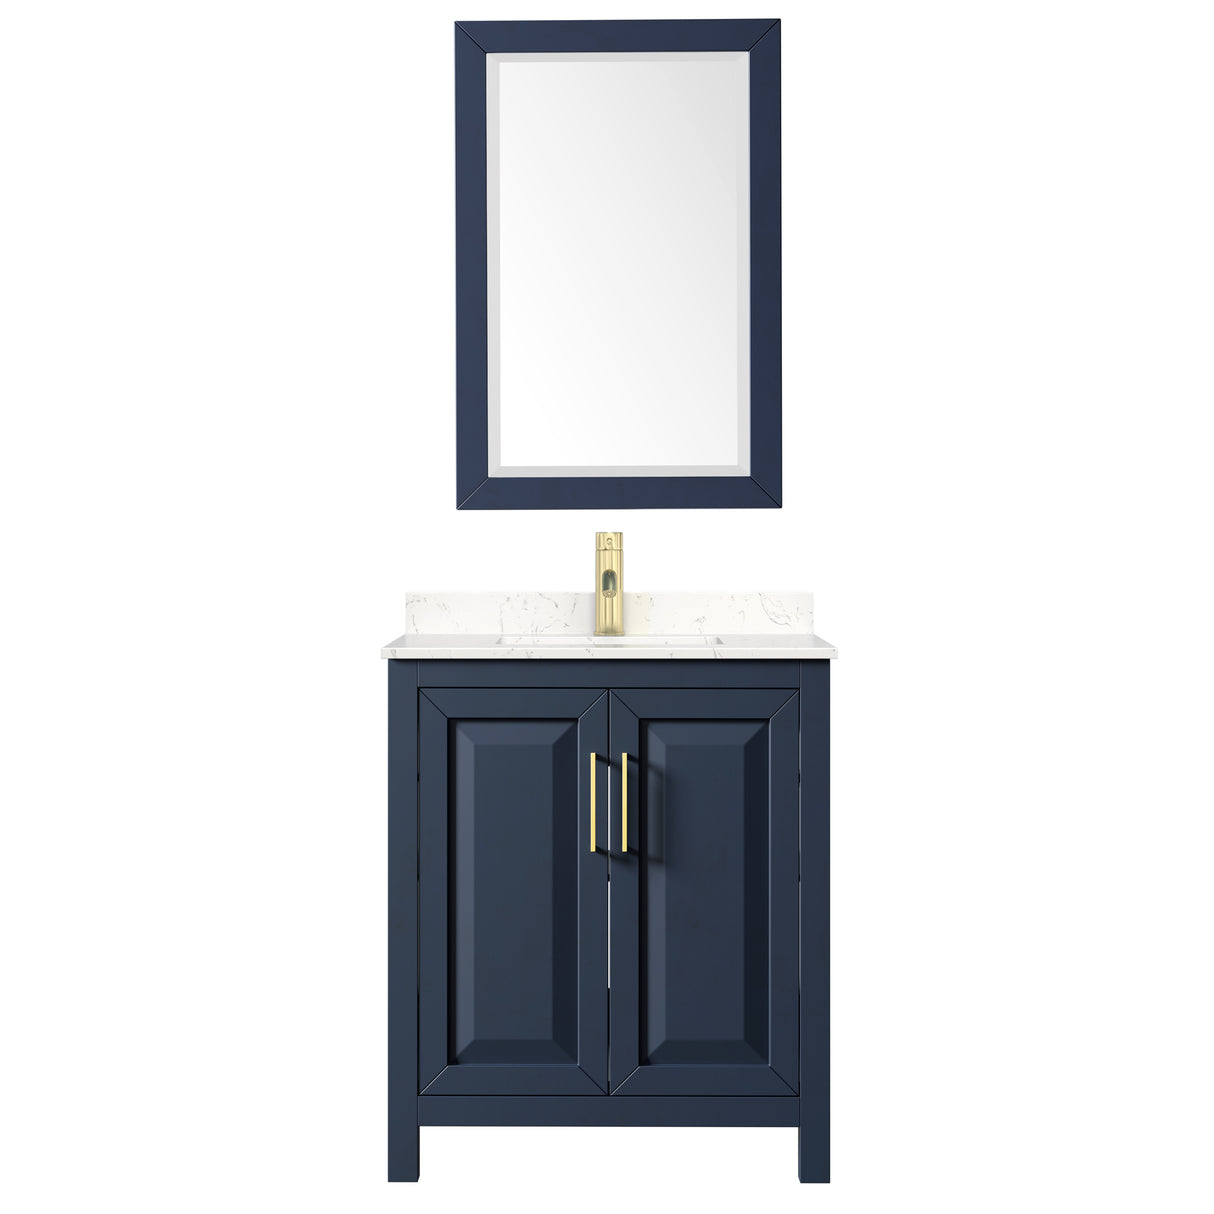 Daria 30 Inch Single Bathroom Vanity in Dark Blue Carrara Cultured Marble Countertop Undermount Square Sink 24 Inch Mirror